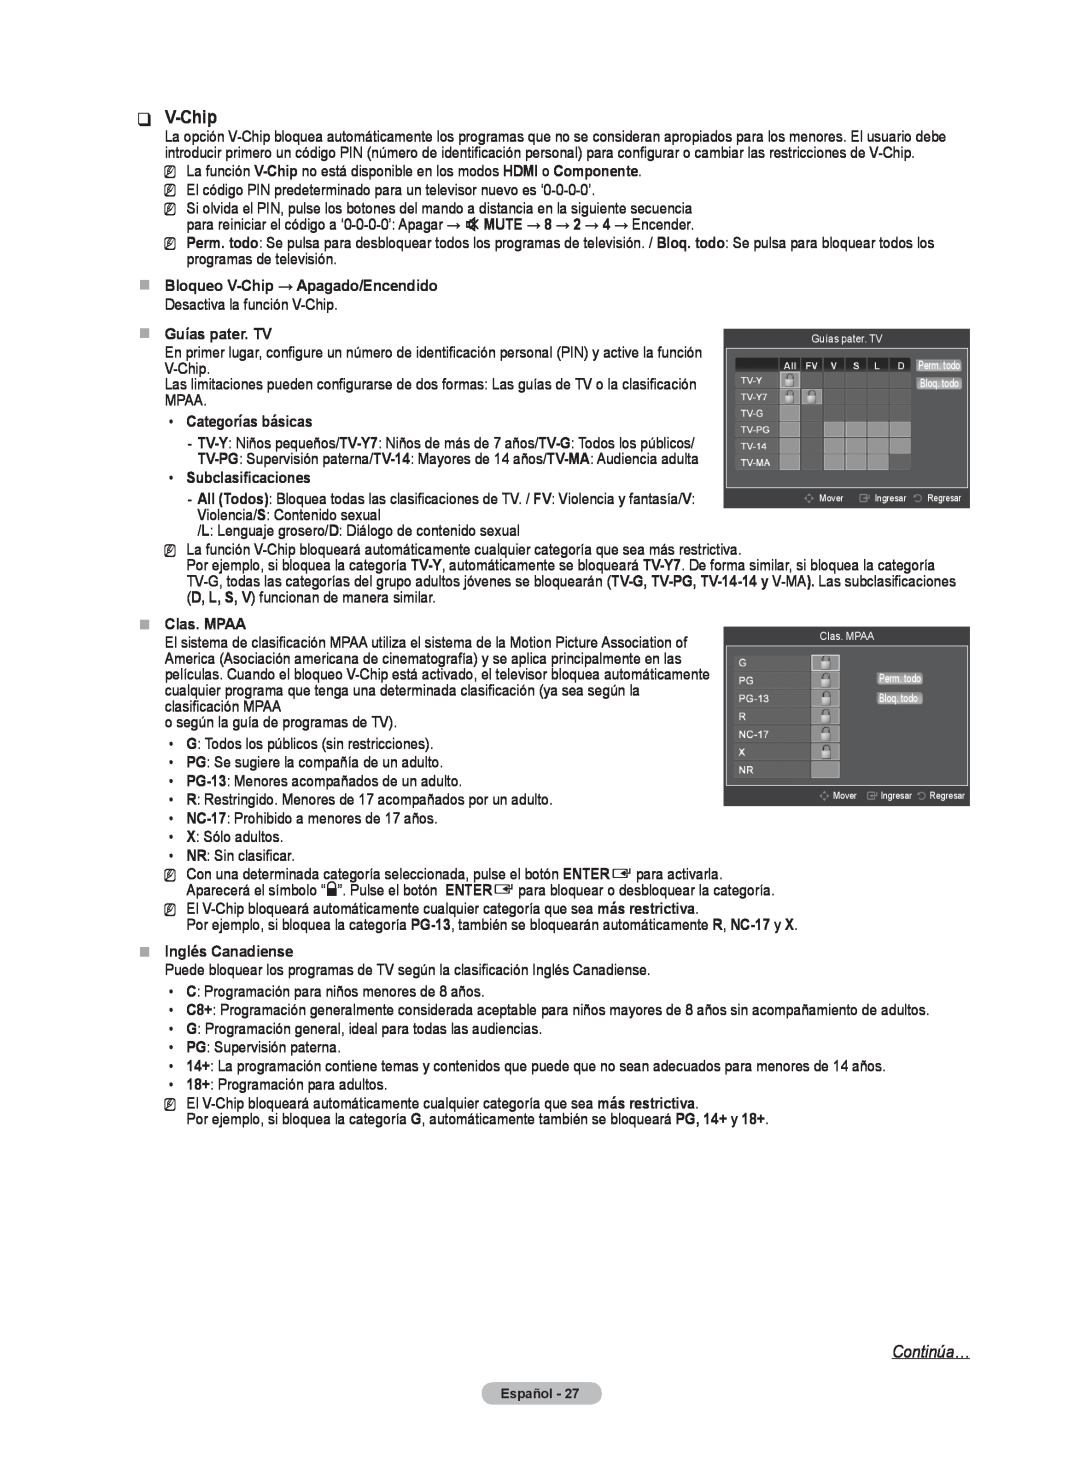 Samsung BN68-02426A-00 Continúa…, „„ Bloqueo V-Chip → Apagado/Encendido, Guías pater. TV, Categorías básicas 